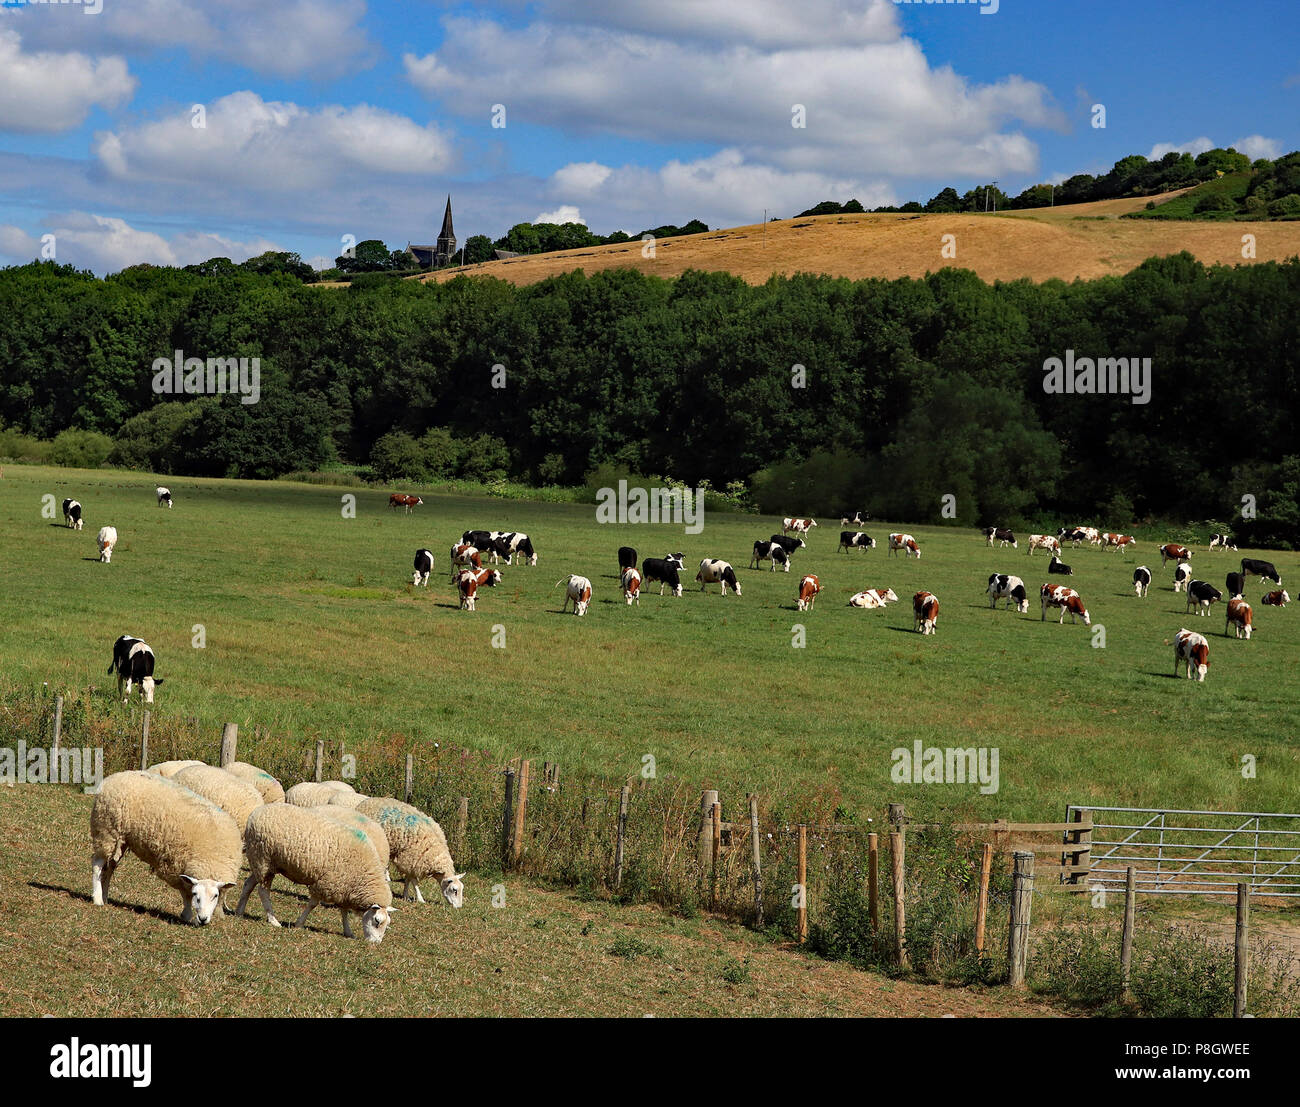 Les moutons et les vaches paissant sur des terres agricoles de la vallée de la rivière Douglas dans le Lancashire ci-dessous Work1, sous un ciel bleu avec des nuages blancs. Banque D'Images